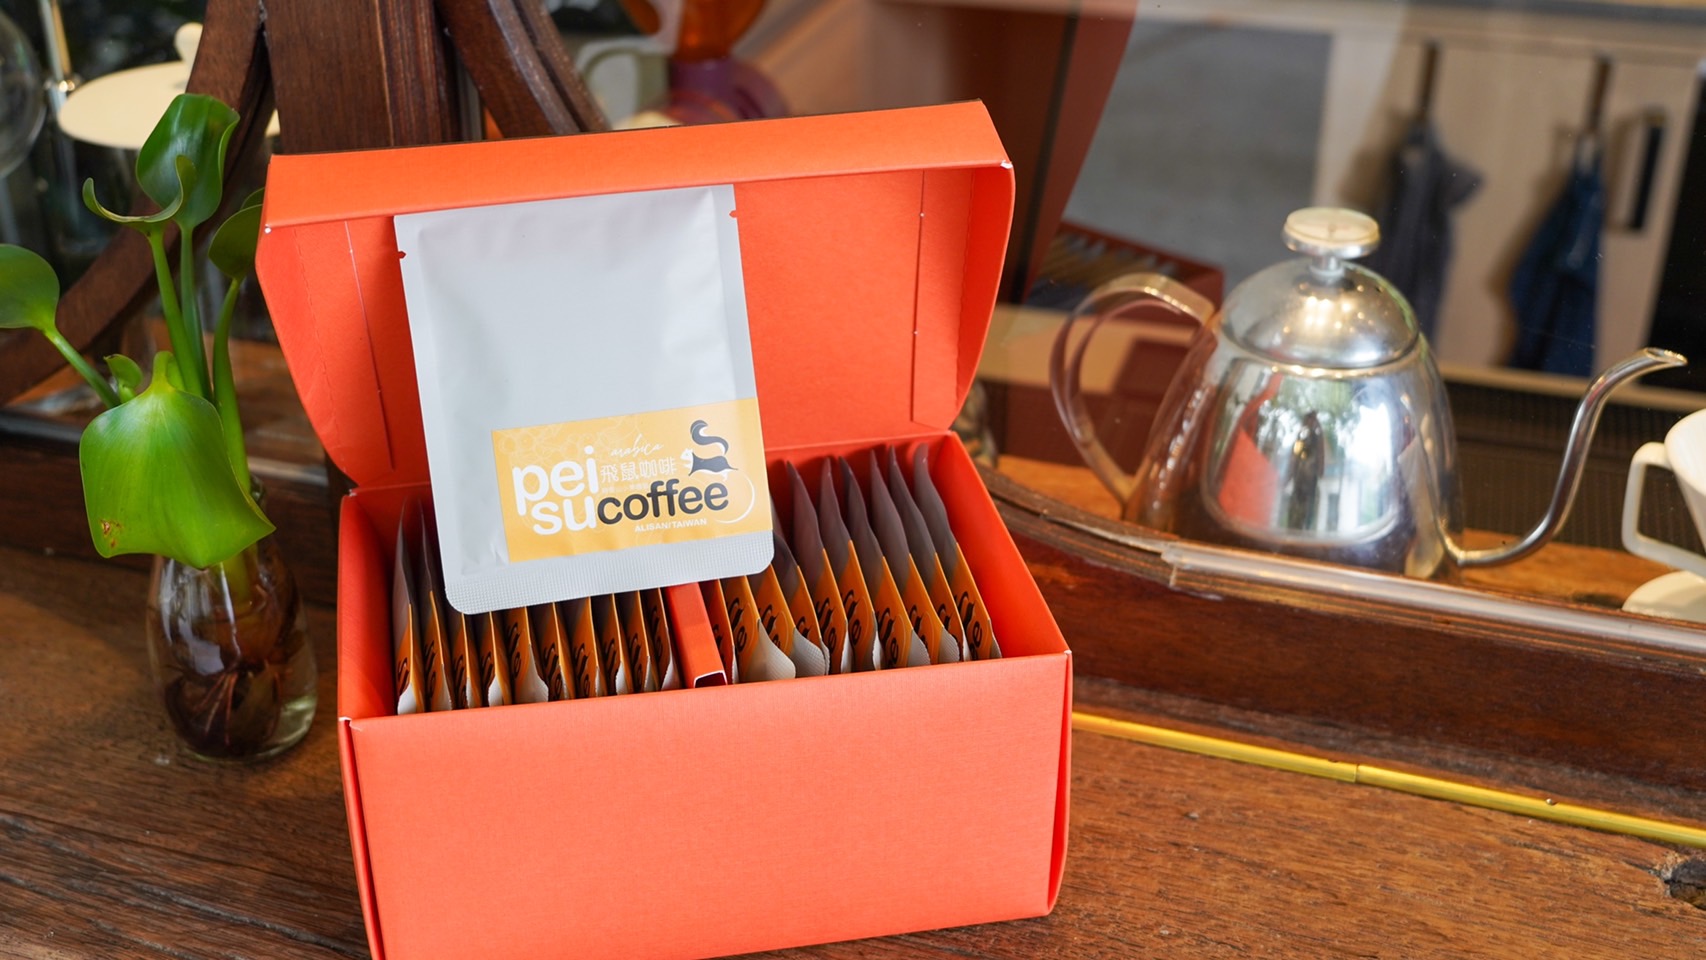 部落產業也發展了深度咖啡與品茶體驗，值得深刻體會，並作為適合國際訪客的伴手禮選項